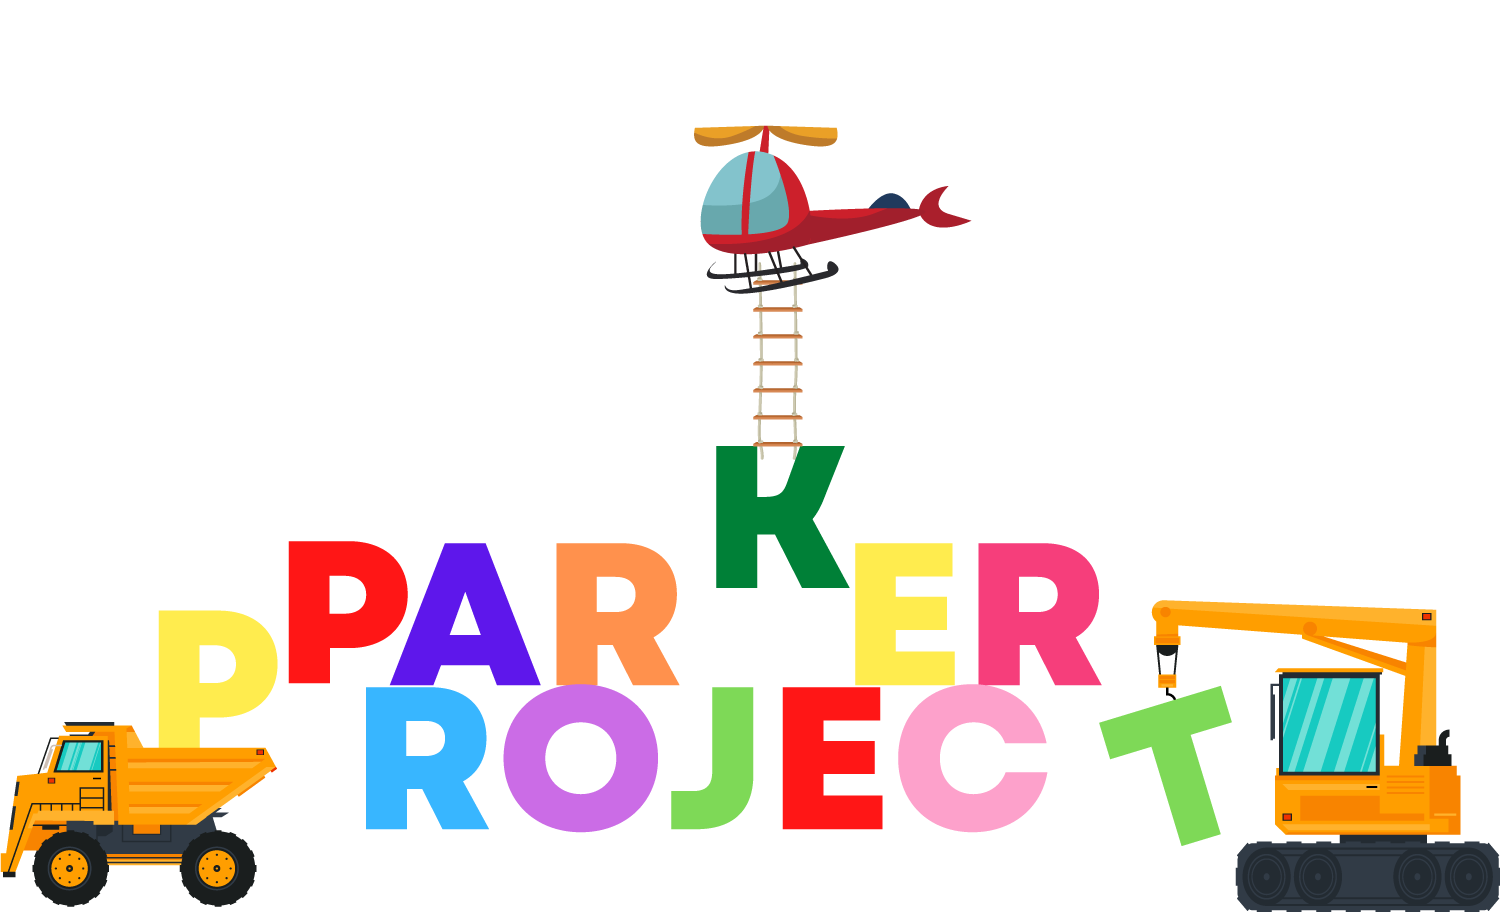 Parker Project, Inc